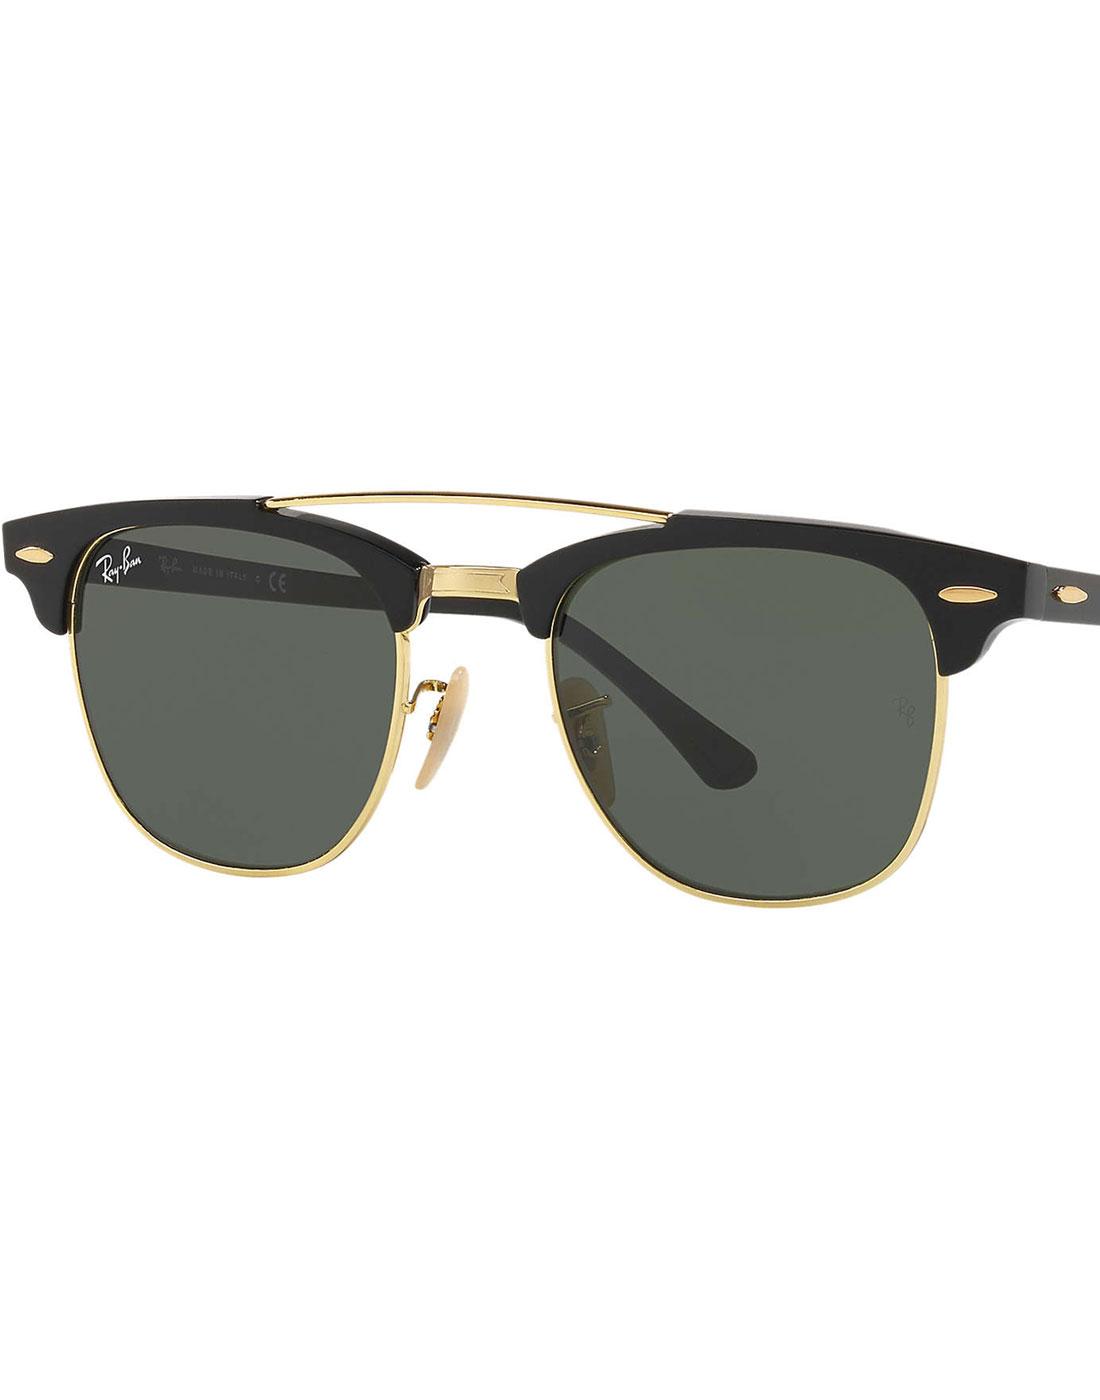 Ray-Ban Clubmaster Double Bridge Retro 50s Mod Sunglasses Black